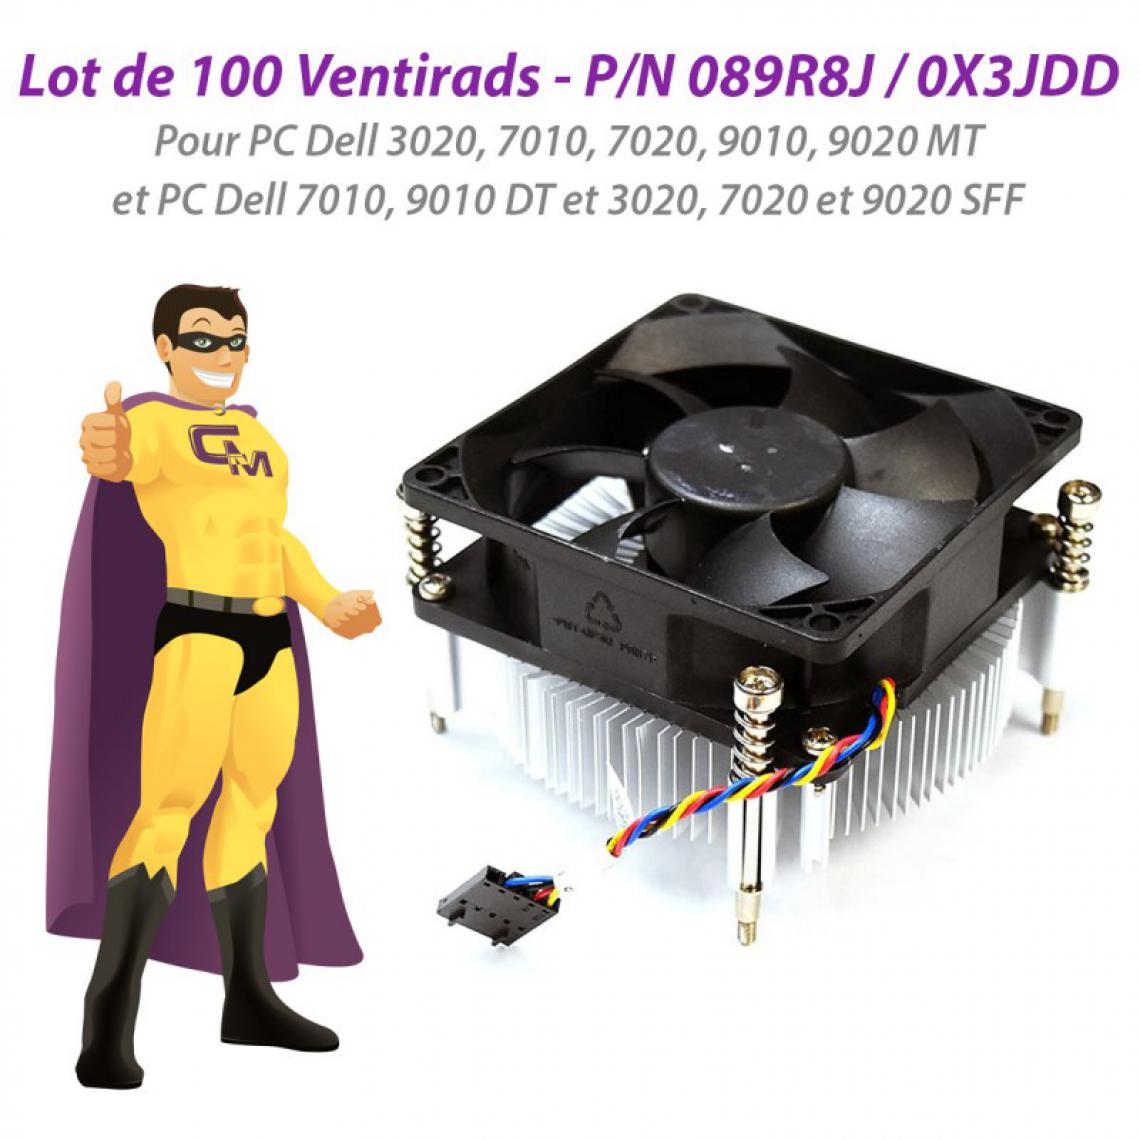 Dell - Lot x100 Ventirads CPU Dell 790 7010 9010 DT 3020 7020 9020 SFF MT 089R8J 0X3JDD - Ventirad Processeur